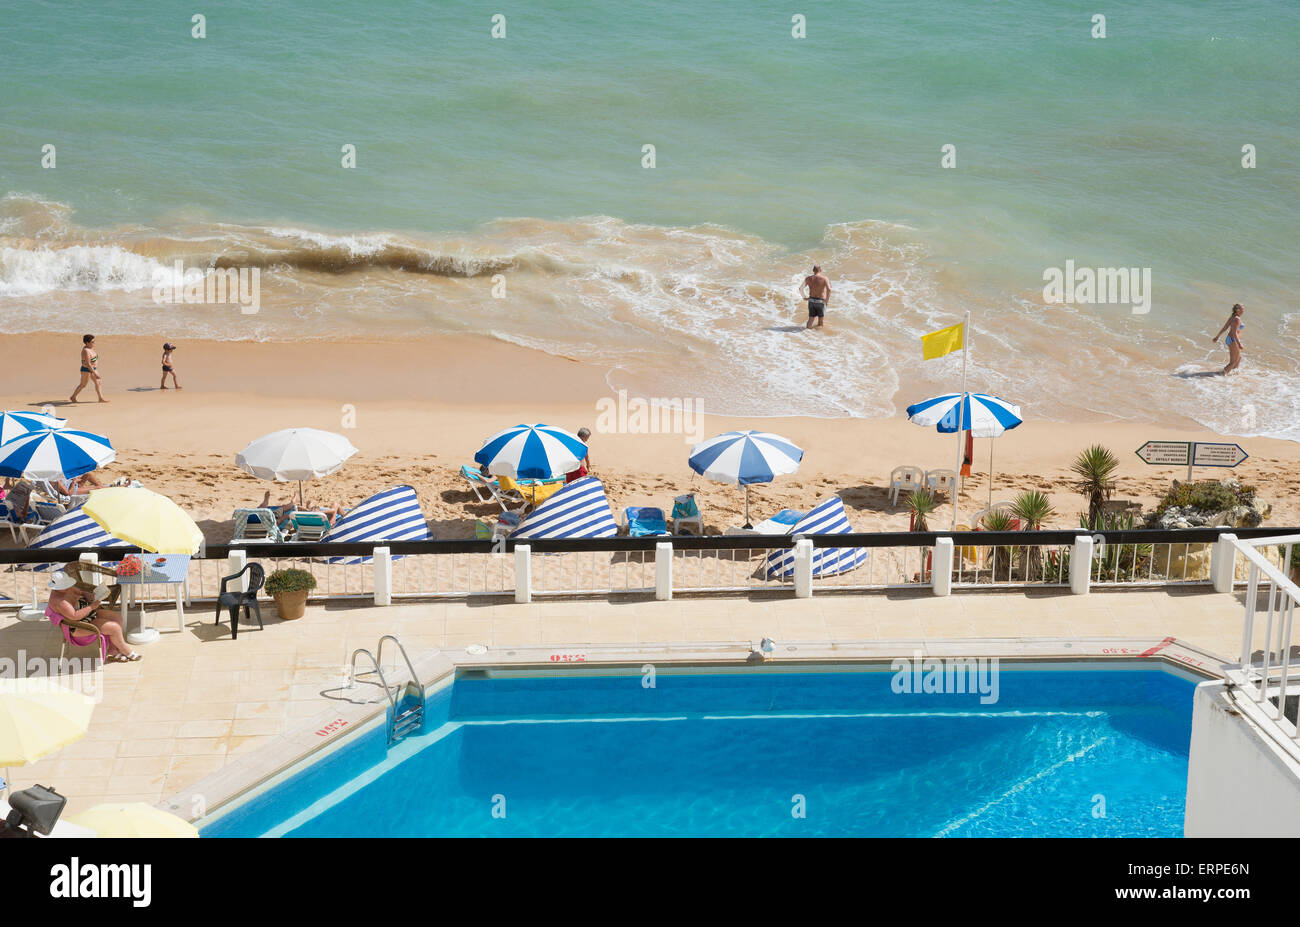 Piscina con una playa de arena y el mar. Algarve Portugal Foto de stock